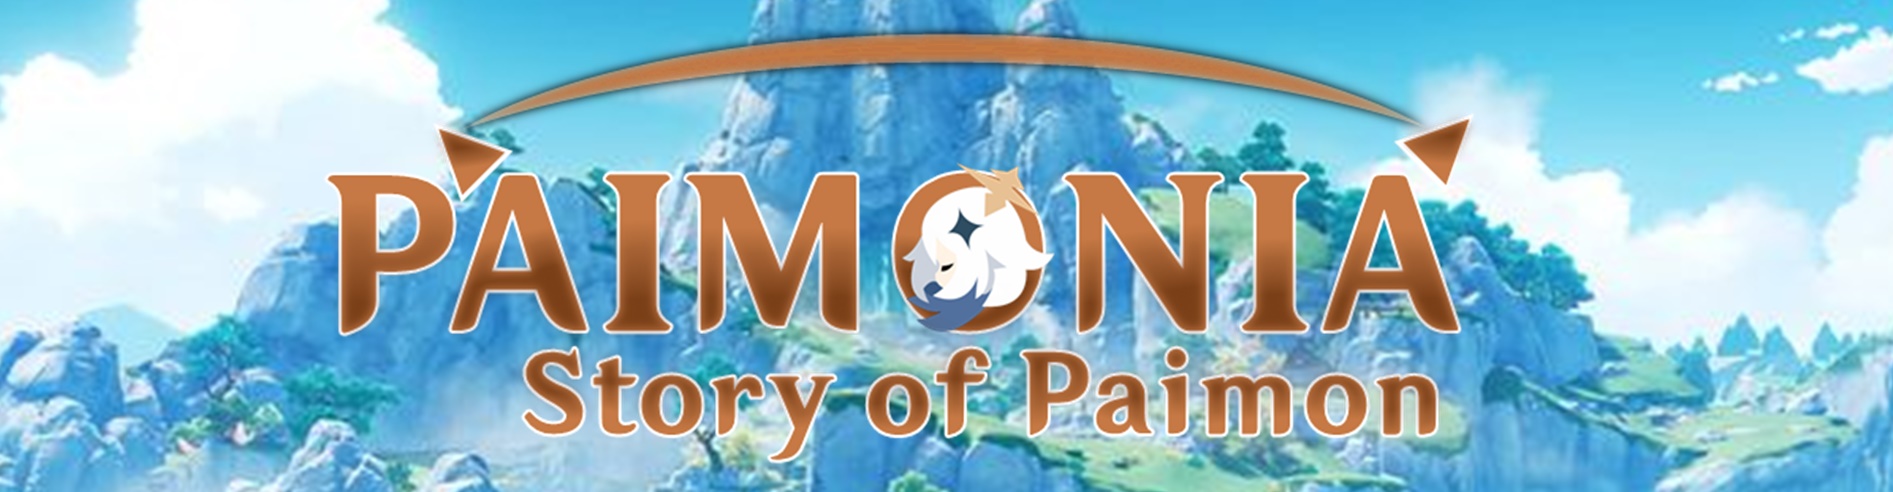 Paimonia , Stroy of Paimon